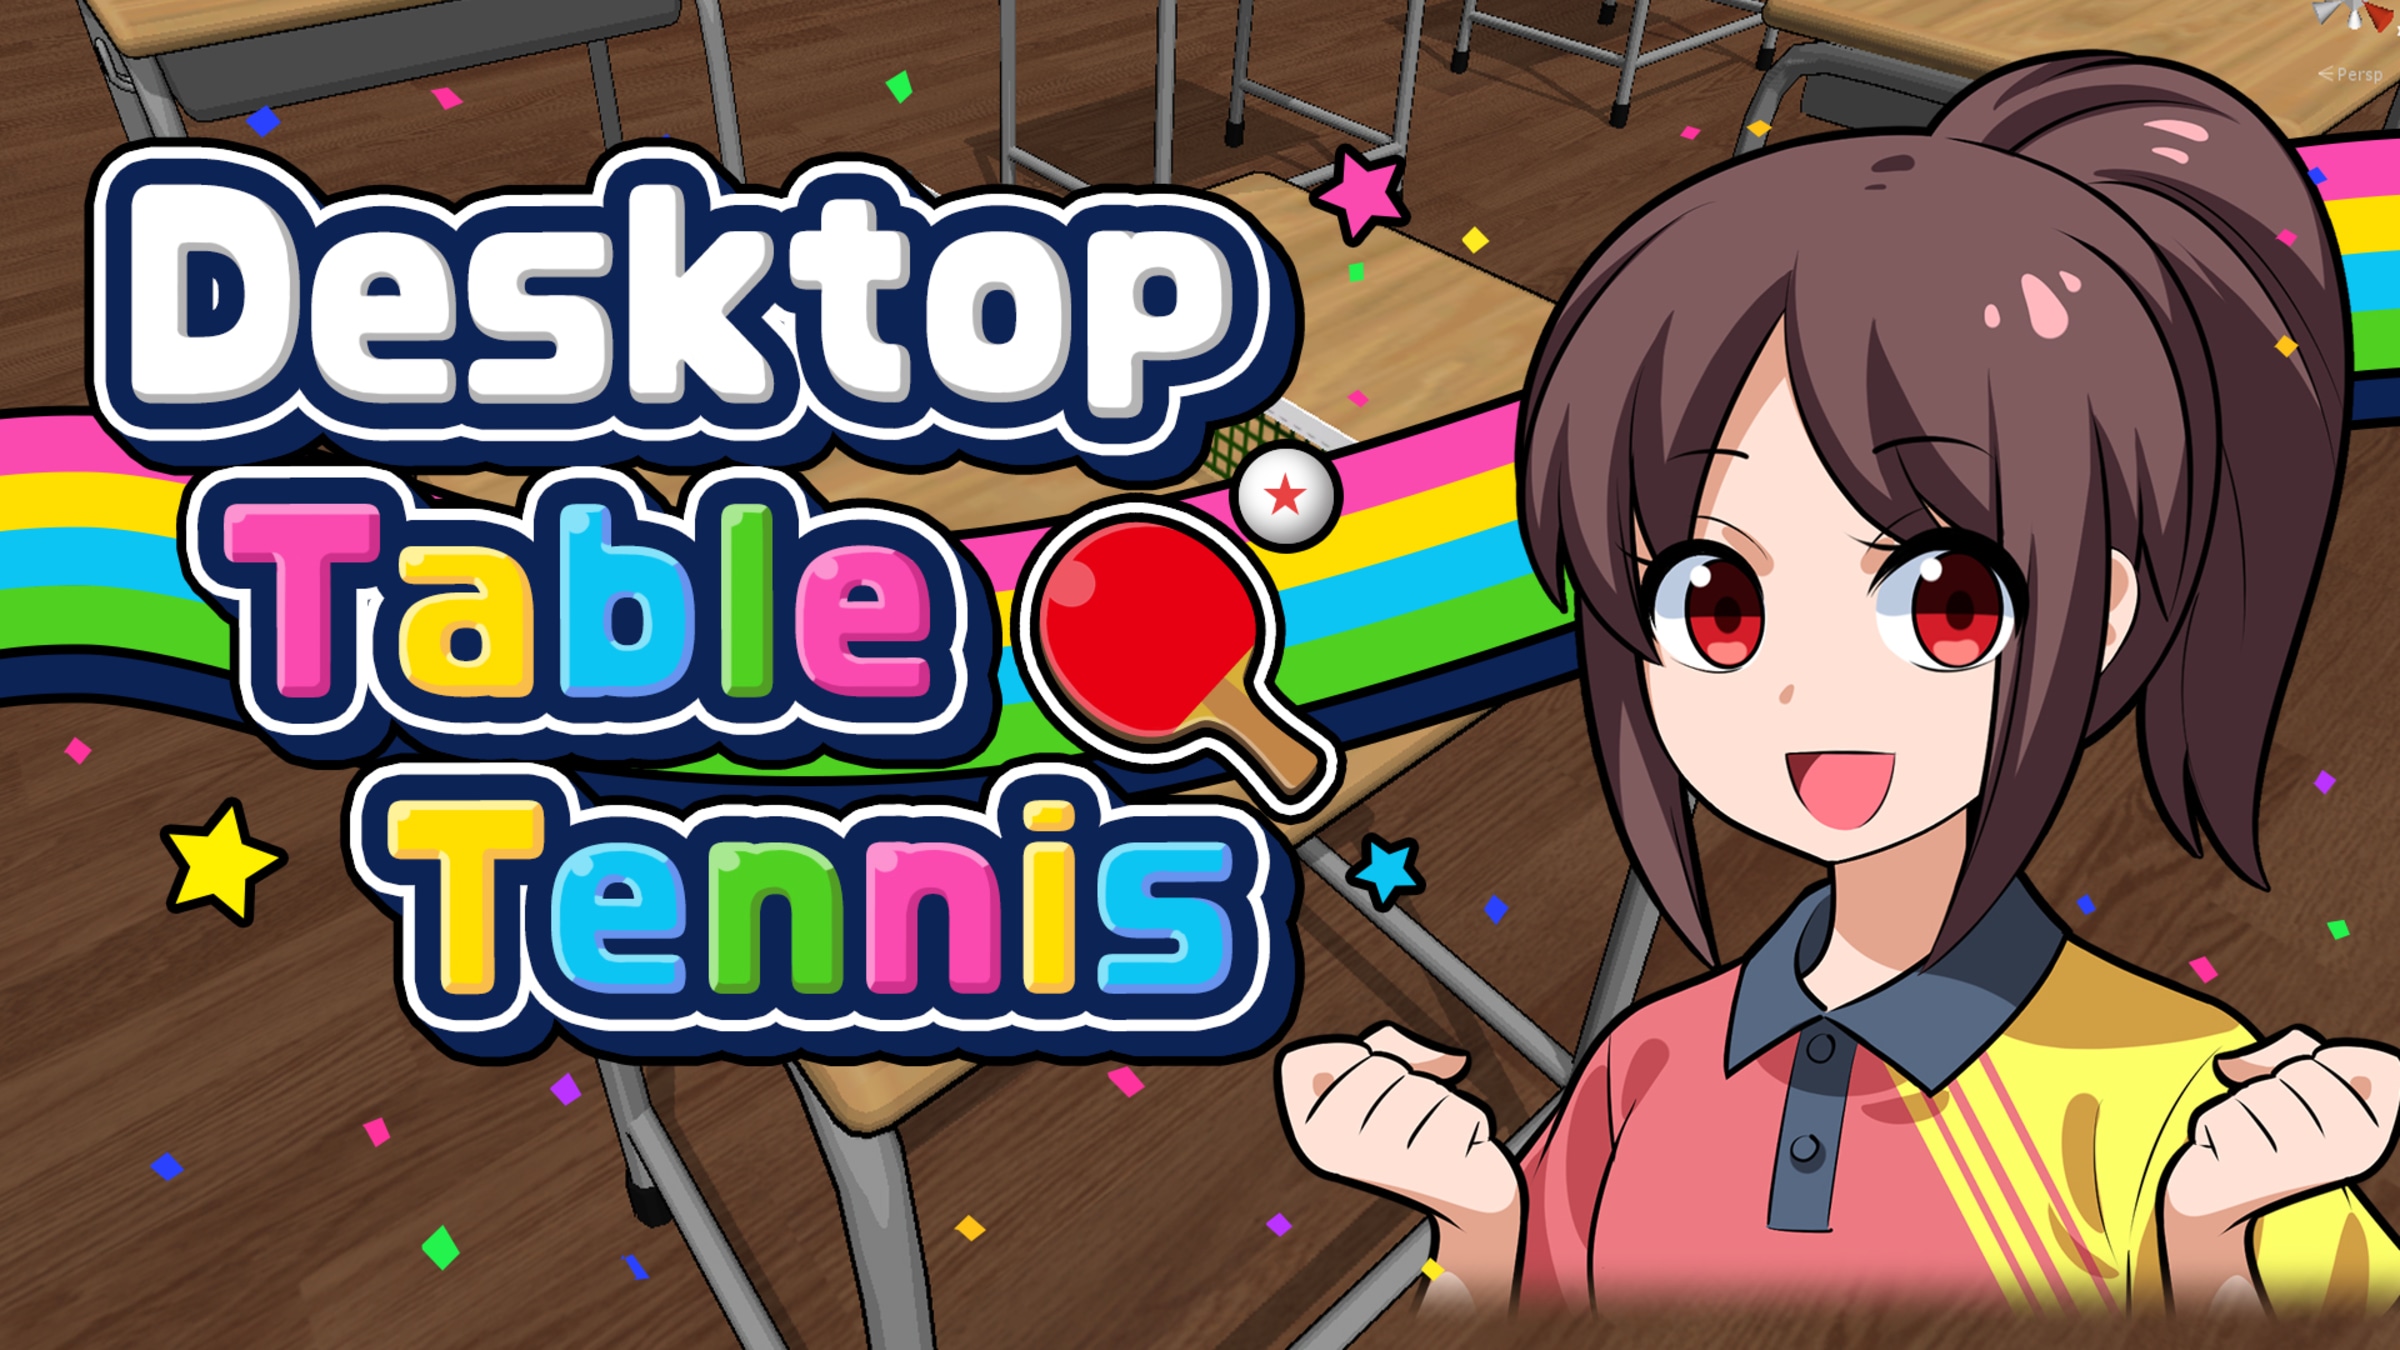 Table Tennis para Nintendo Switch - Sitio oficial de Nintendo